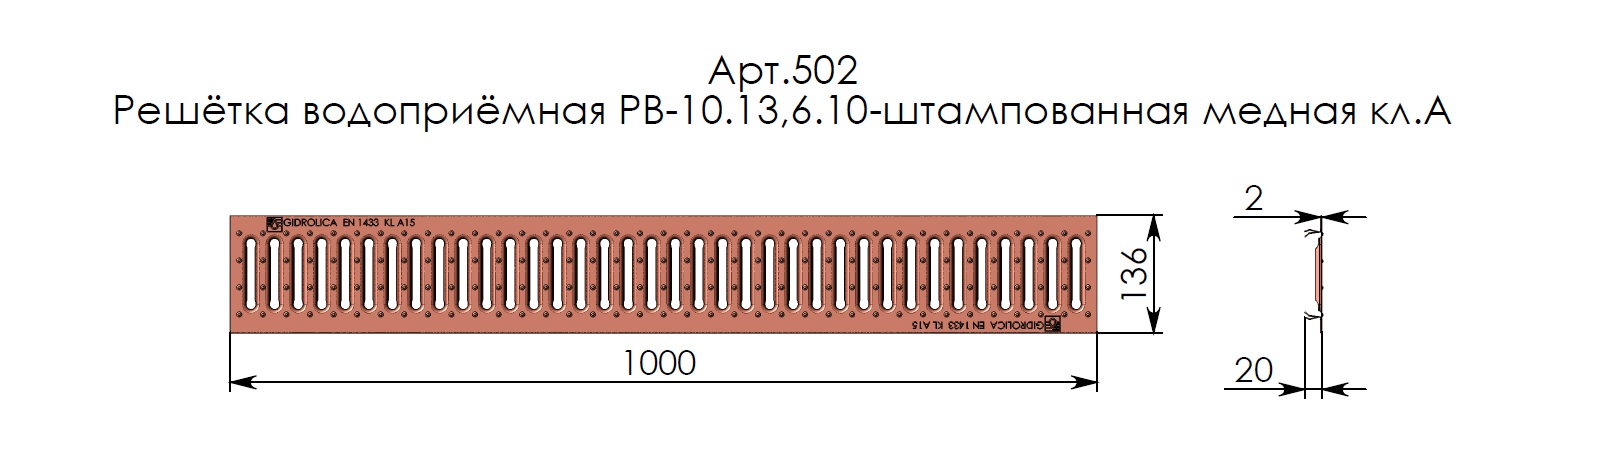 Решетка водоприемная Gidrolica Standart РВ-10.13,6.100-штамп. медная, кл. А15 (502) 4